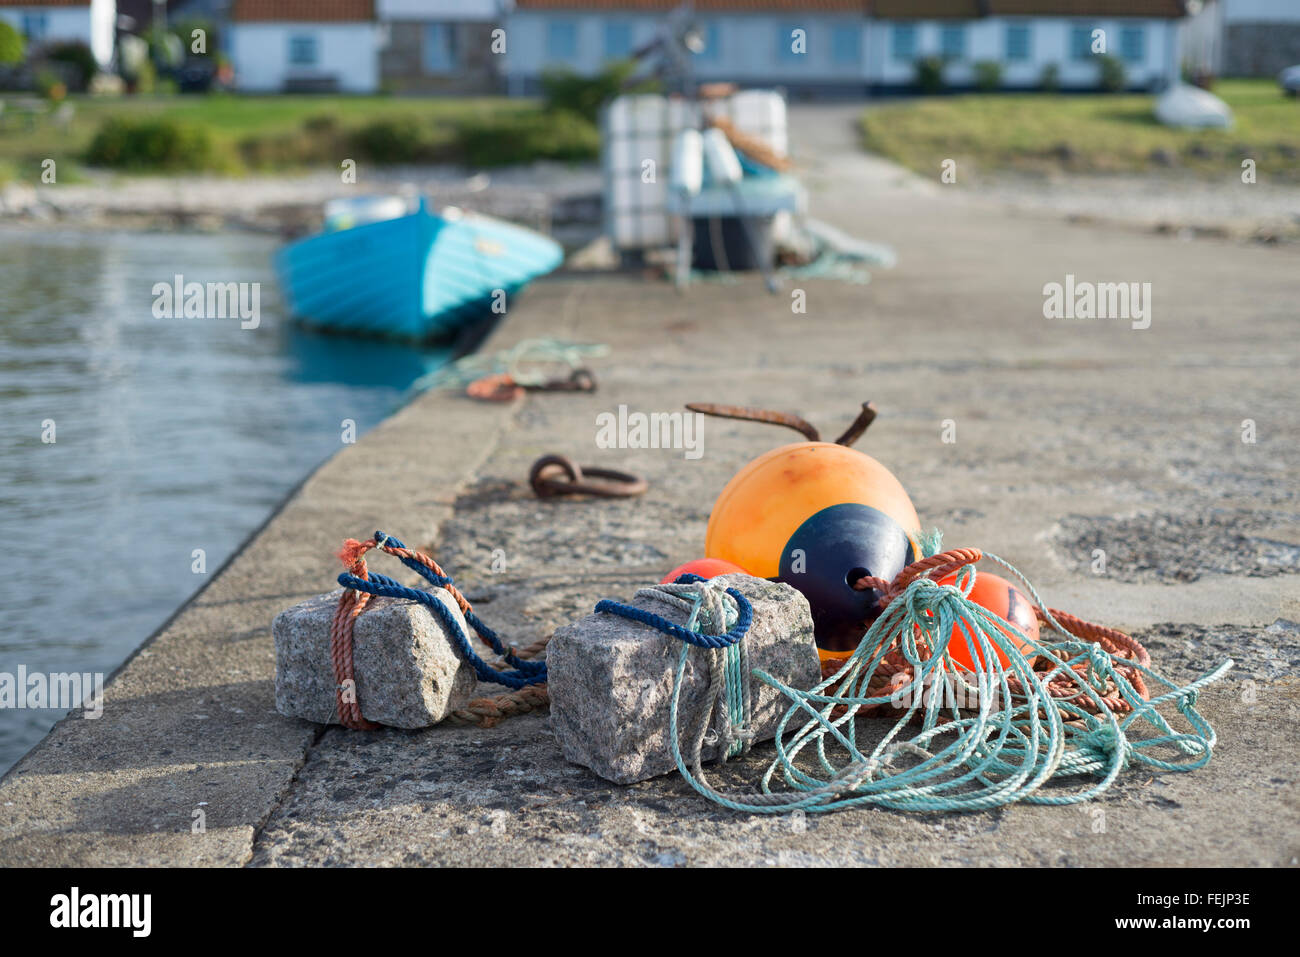 Les engins de pêche - Bouée, ancres, cordes sur le port mole du village de pêcheurs de Vik à Skane sur la côte est de la Suède Banque D'Images